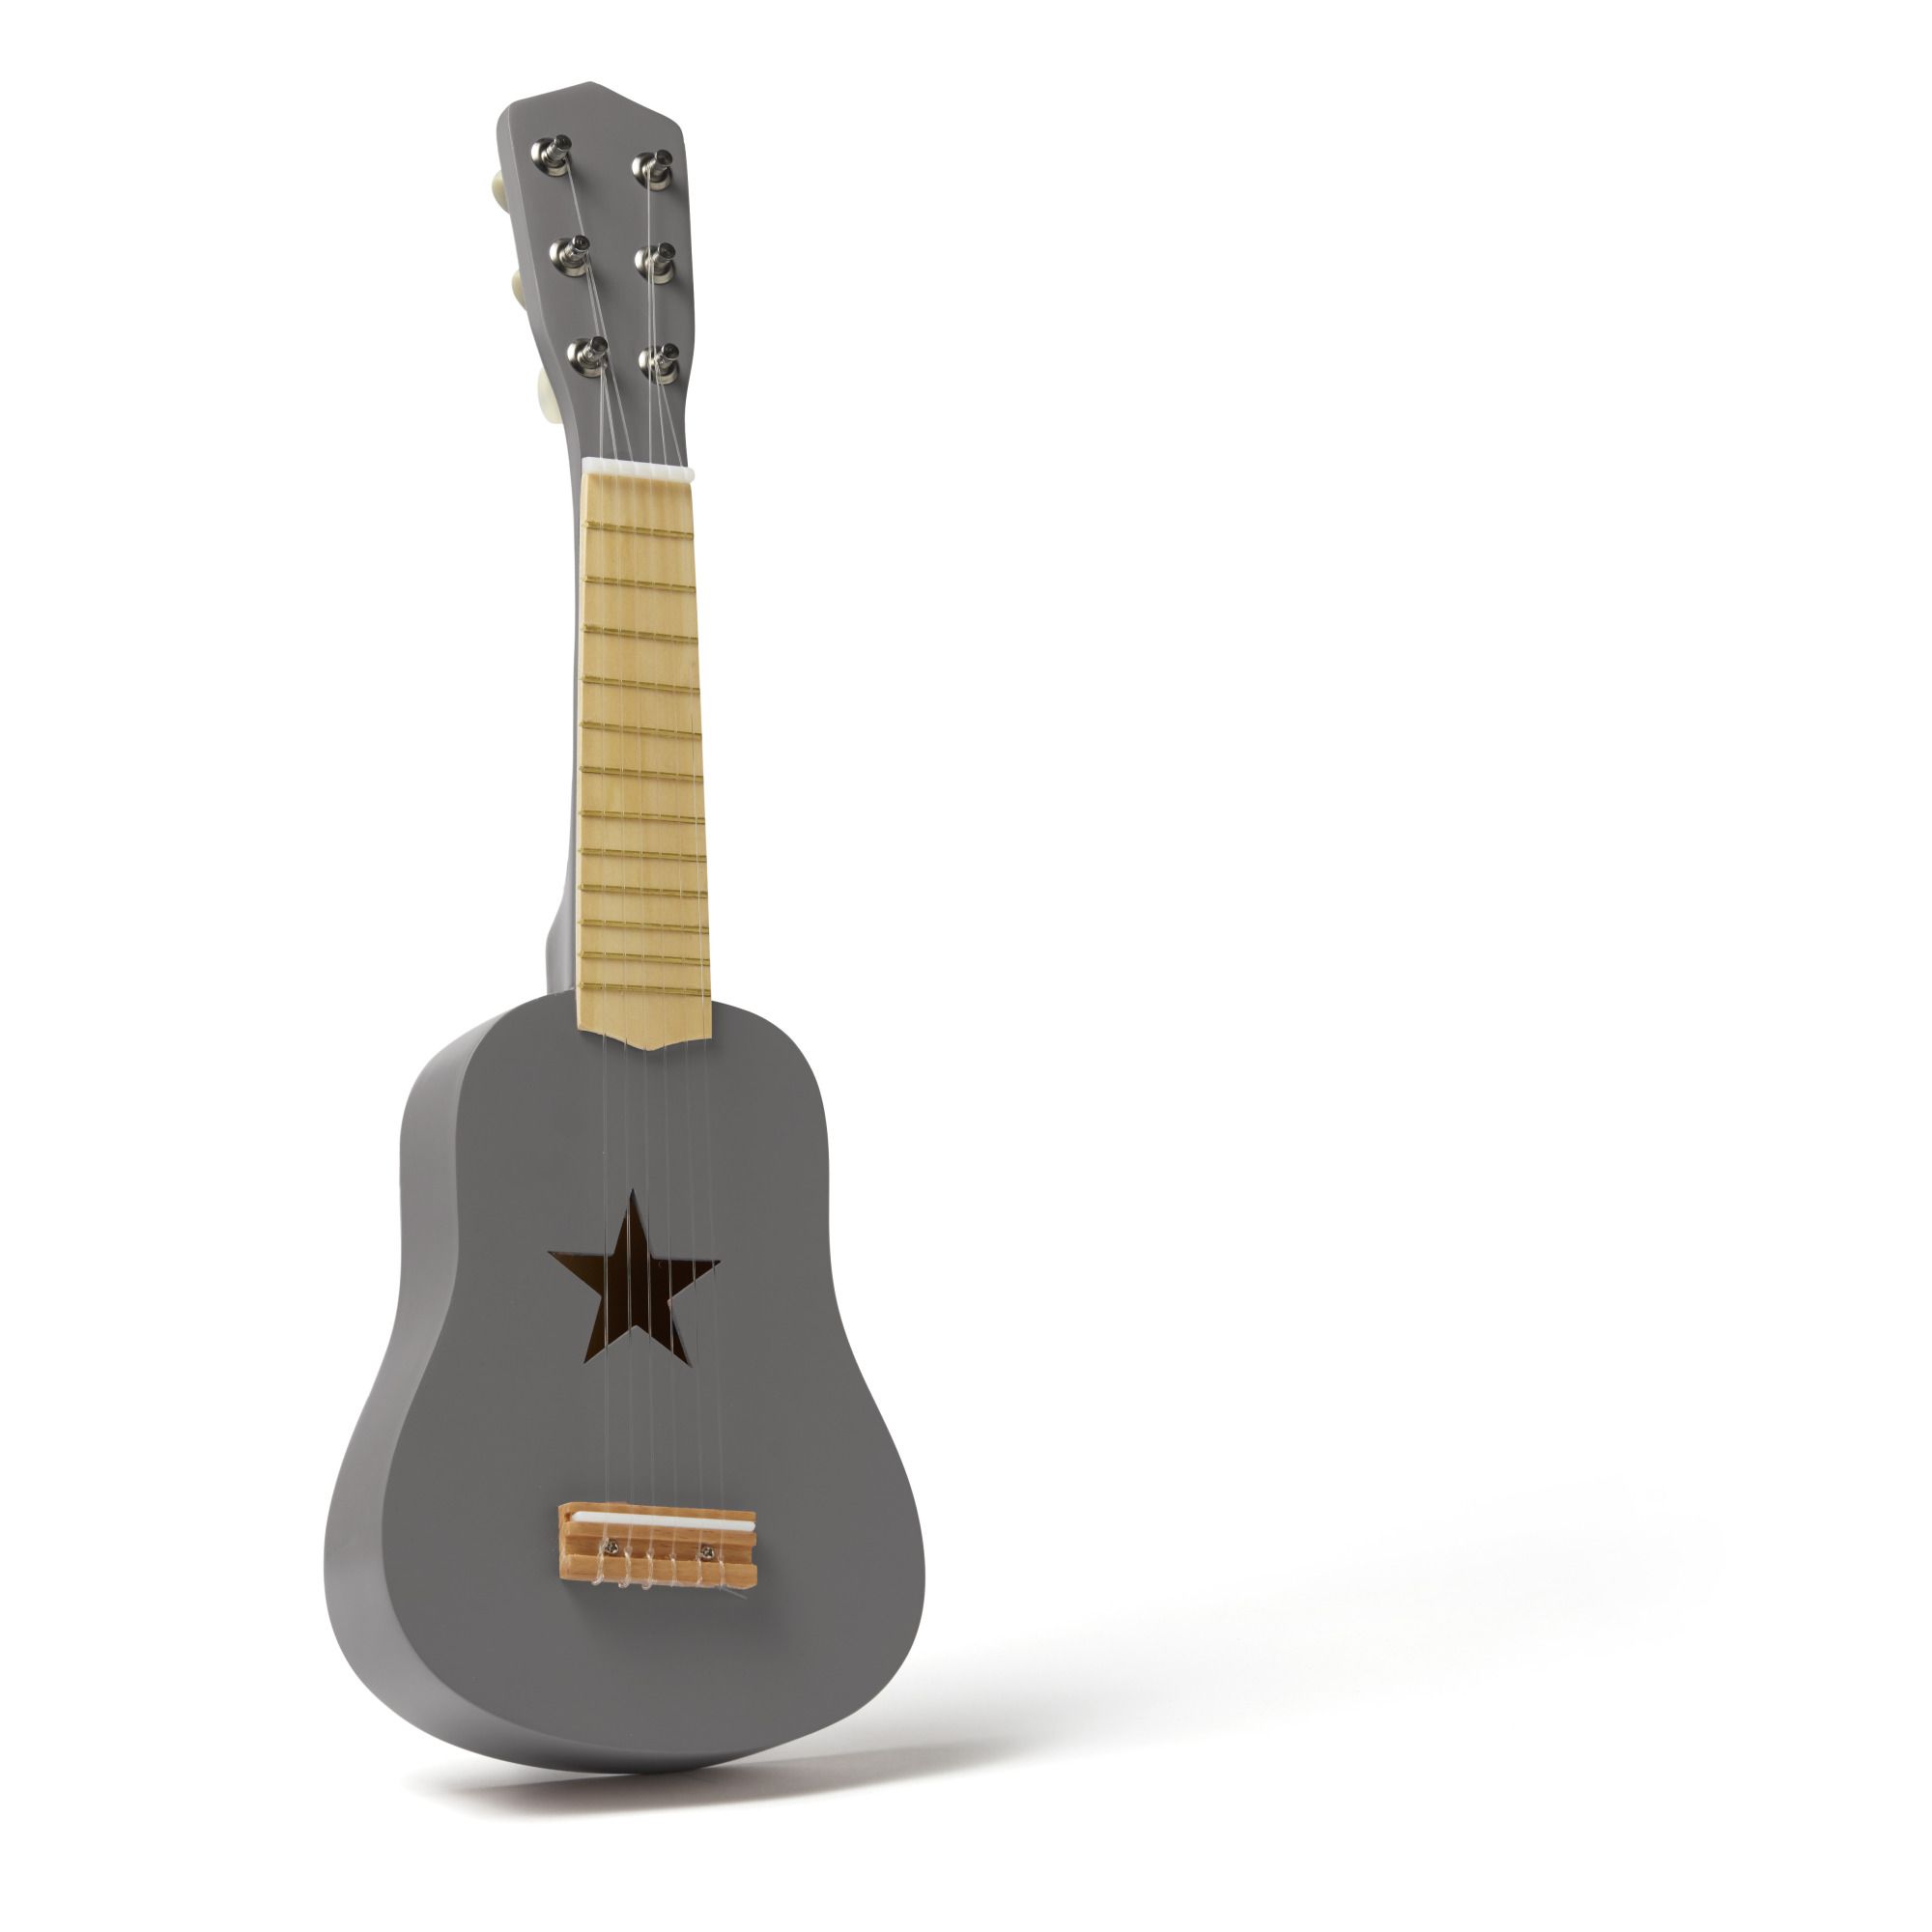 Kid's Concept Wooden Children's Guitar Dark grey one size unisex